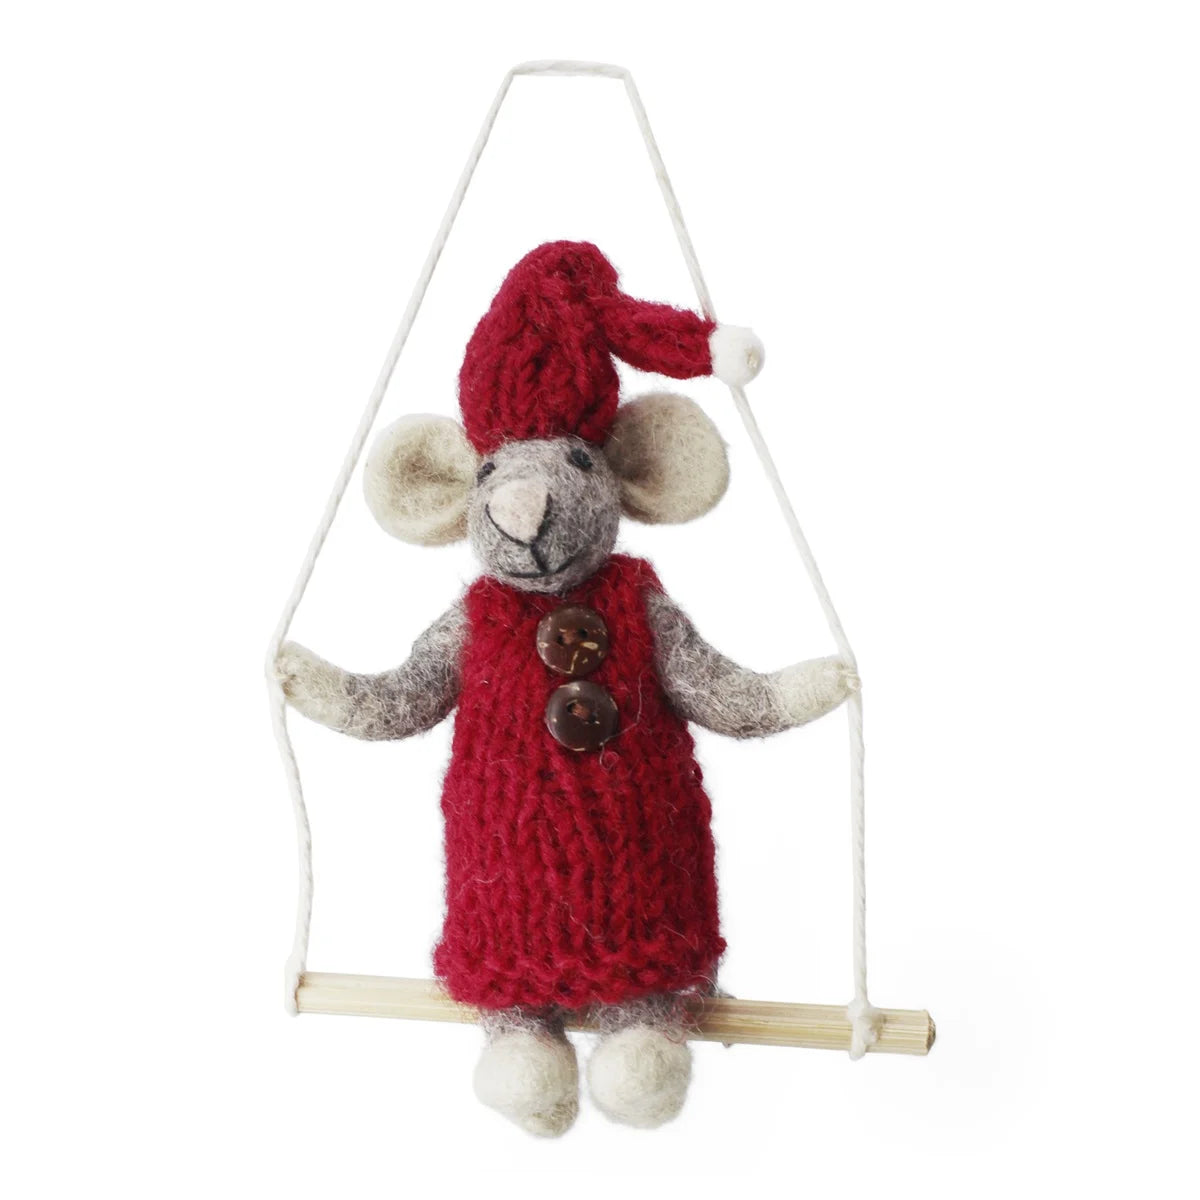 Anhänger - Kleine graue Girly-Maus mit rotem Kleid auf der Schaukel